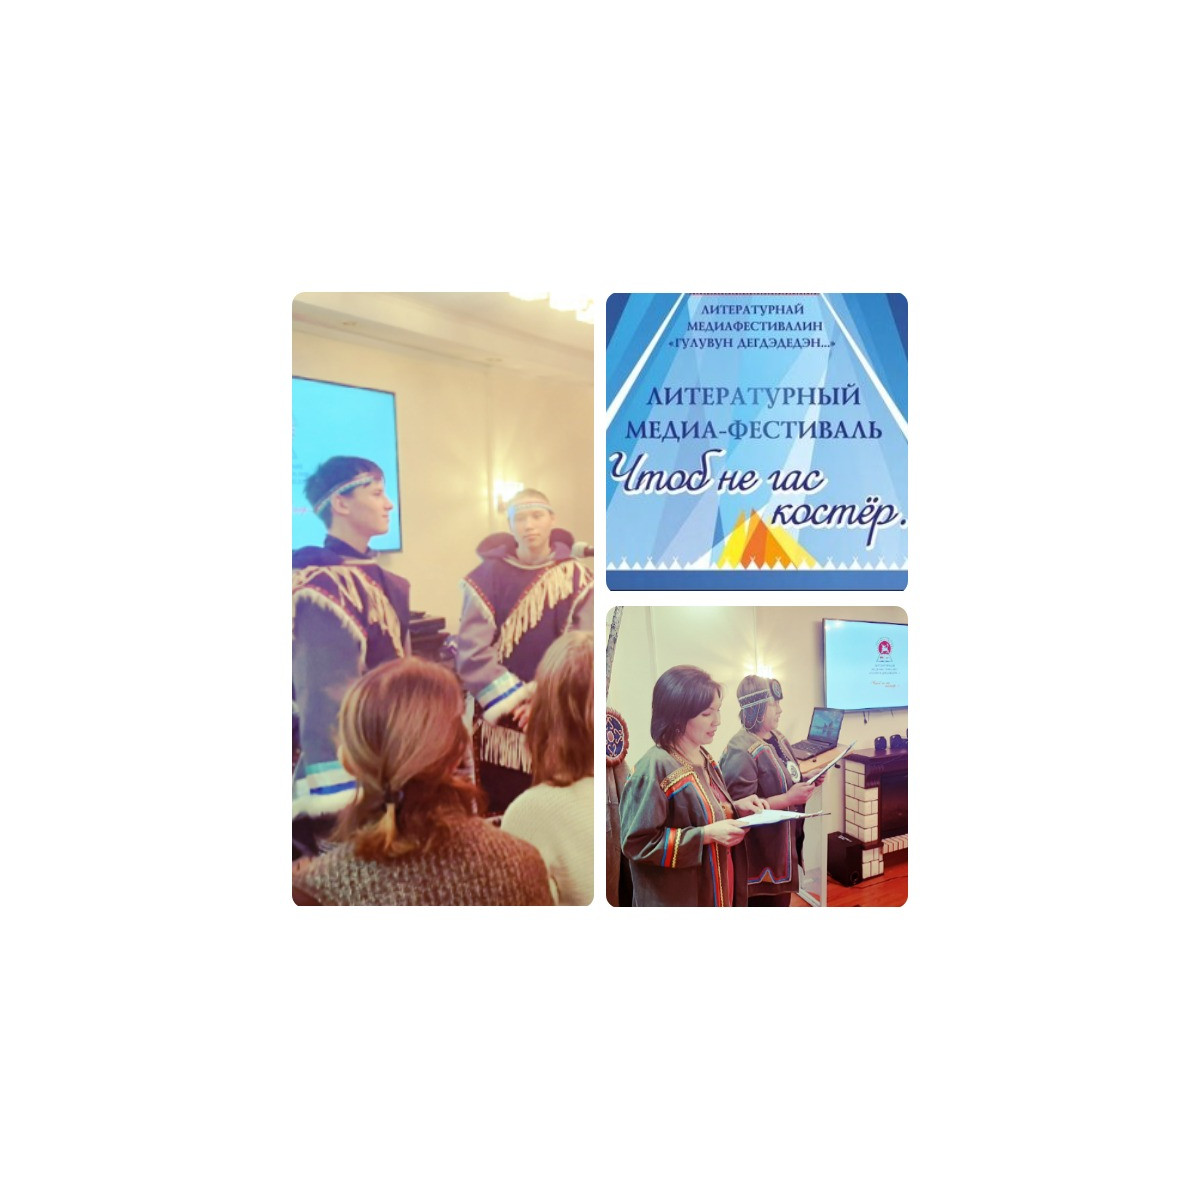 Студенты Эвенкийского многопрофильного техникума посетили литературный медиа-фестиваль «Чтоб не гас костер…»